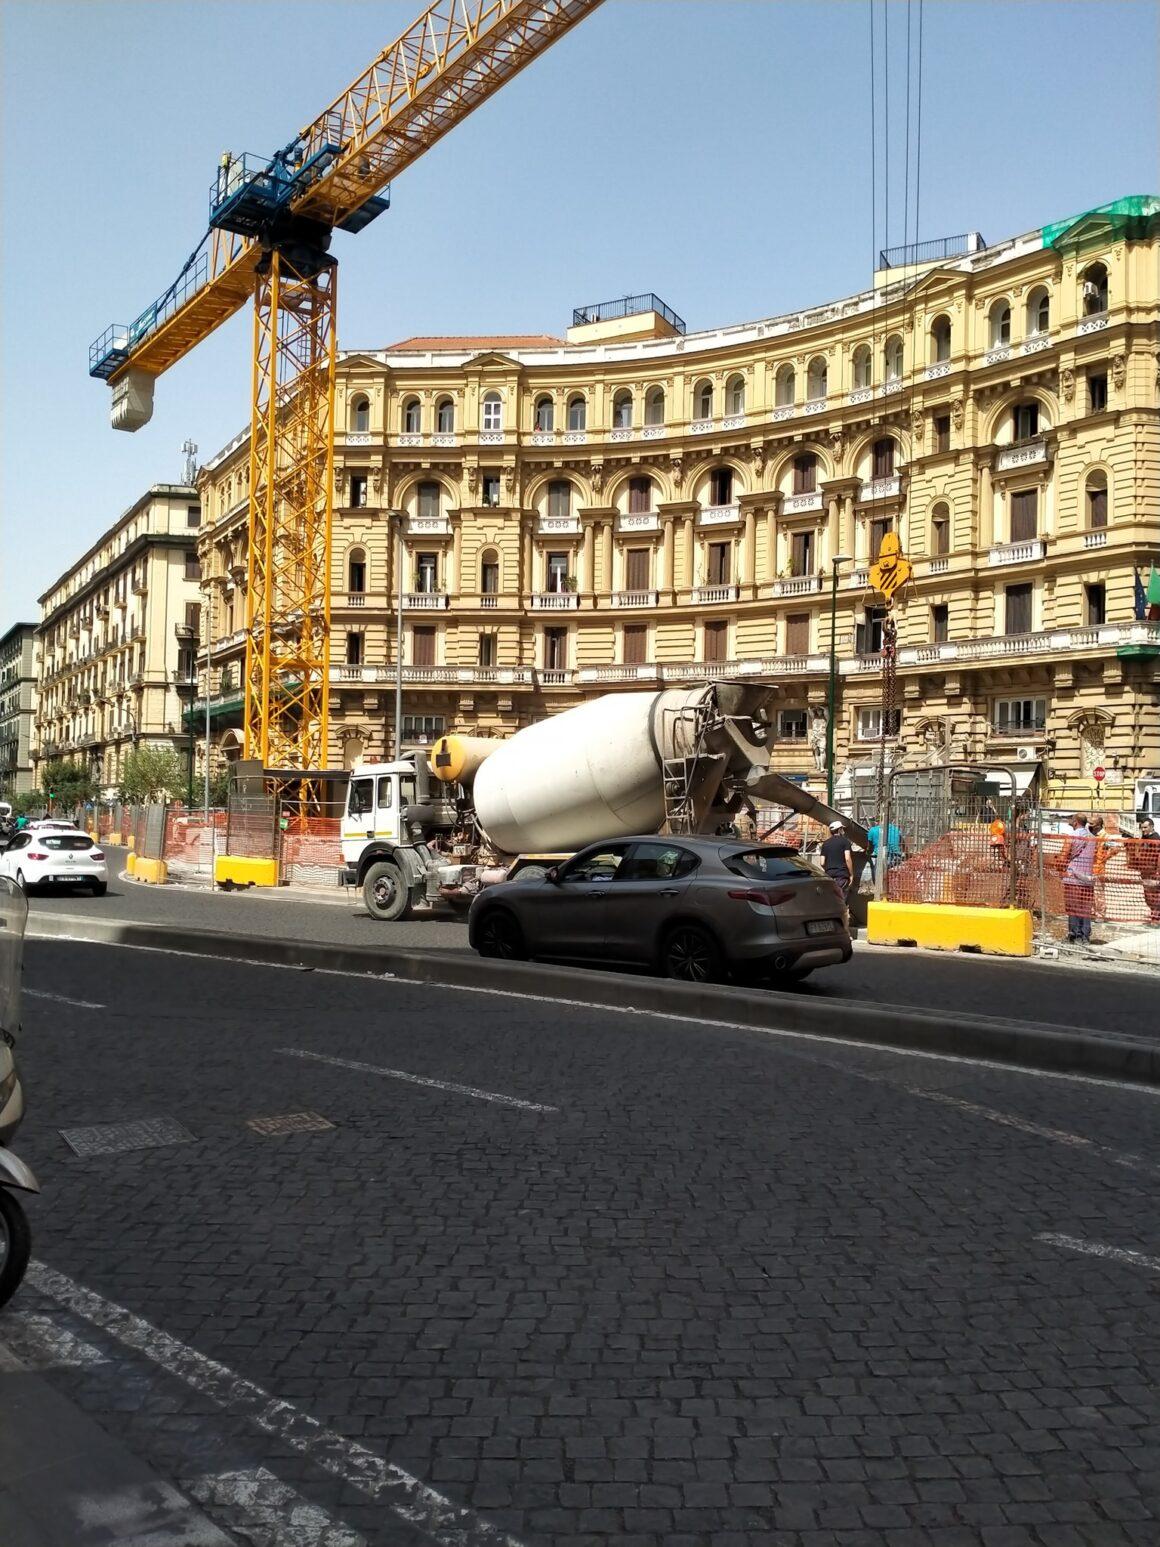 Piazza Nicola Amore durante i lavori per la costruzione della cupola della stazione duomo - foto di Giuseppe Criscuolo, dal gruppo Facebook "Napoli ieri e oggi"